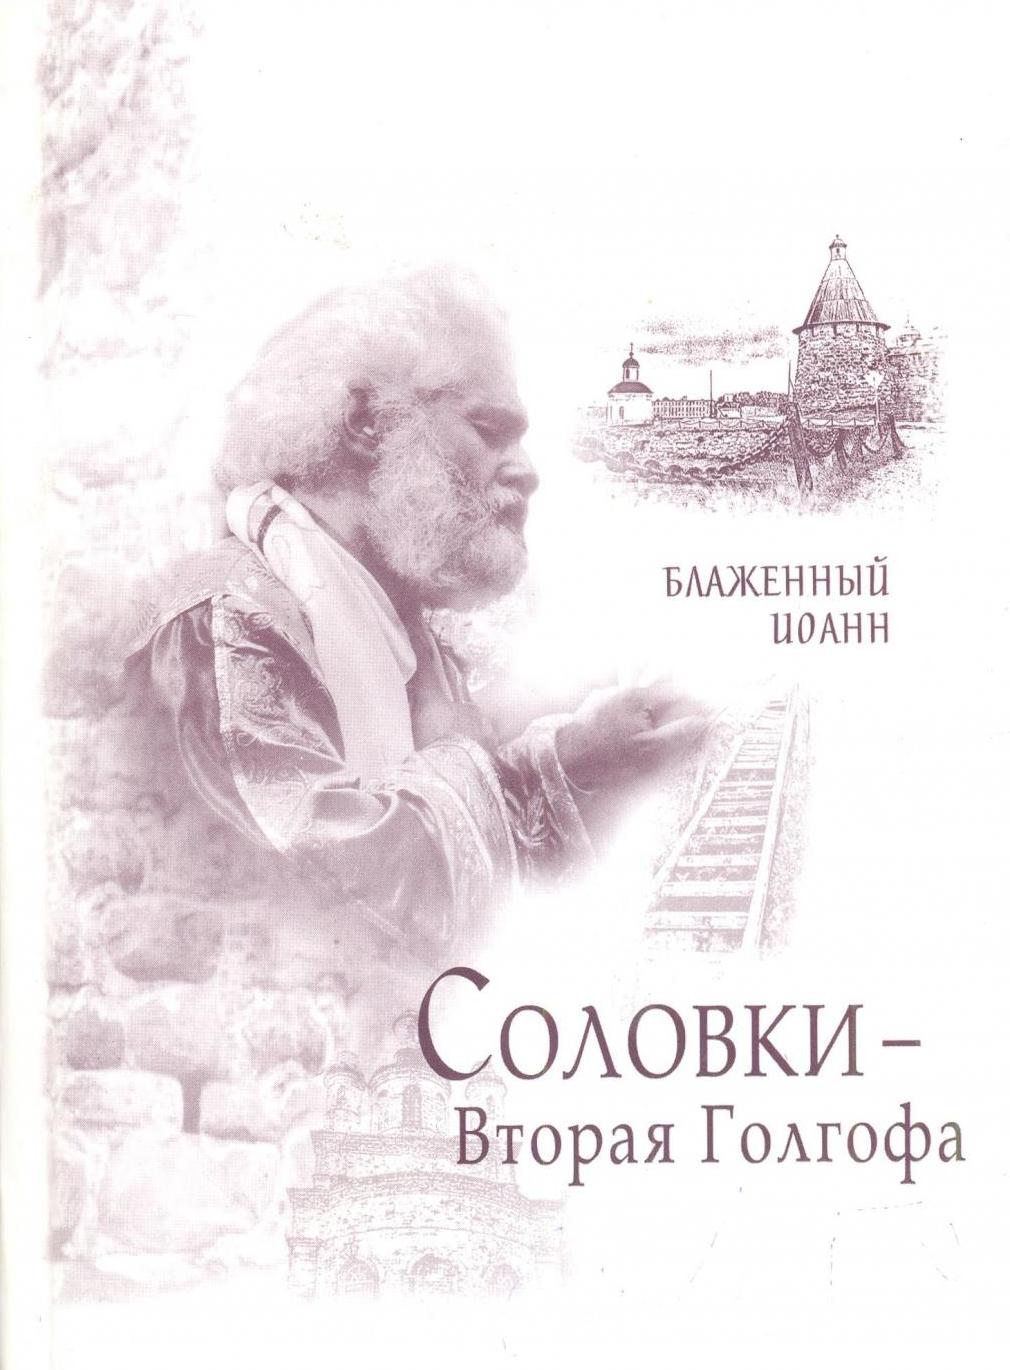 Иоанн Береславский написал книгу "Соловки - Вторая Голгофа"